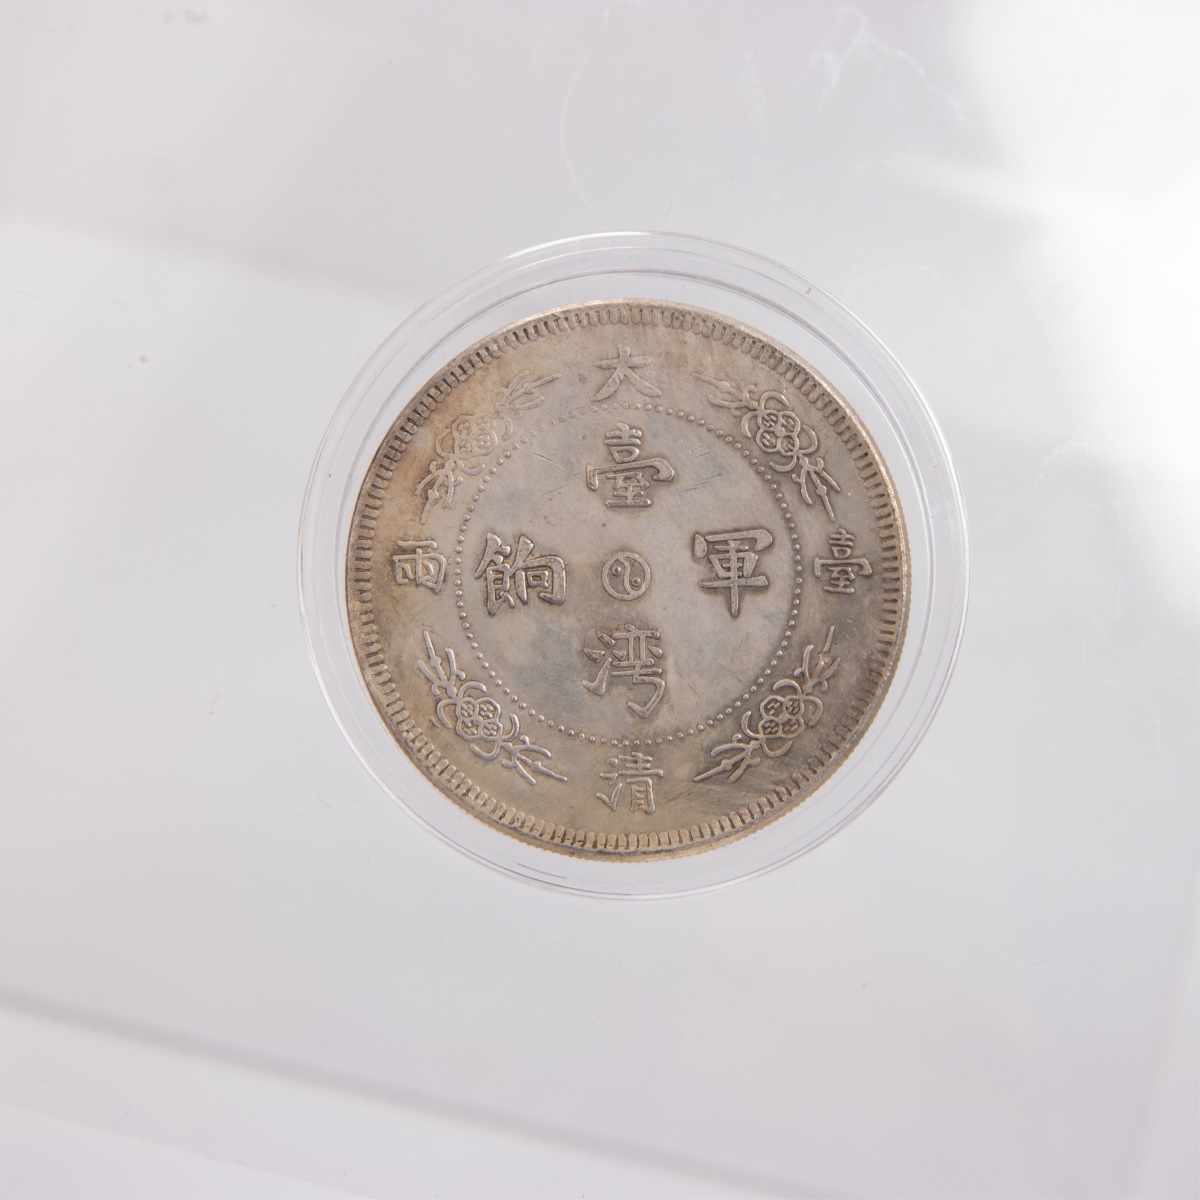 China, Taiwan "Jun Xiang" Dragon And Horse Coin - Image 5 of 9